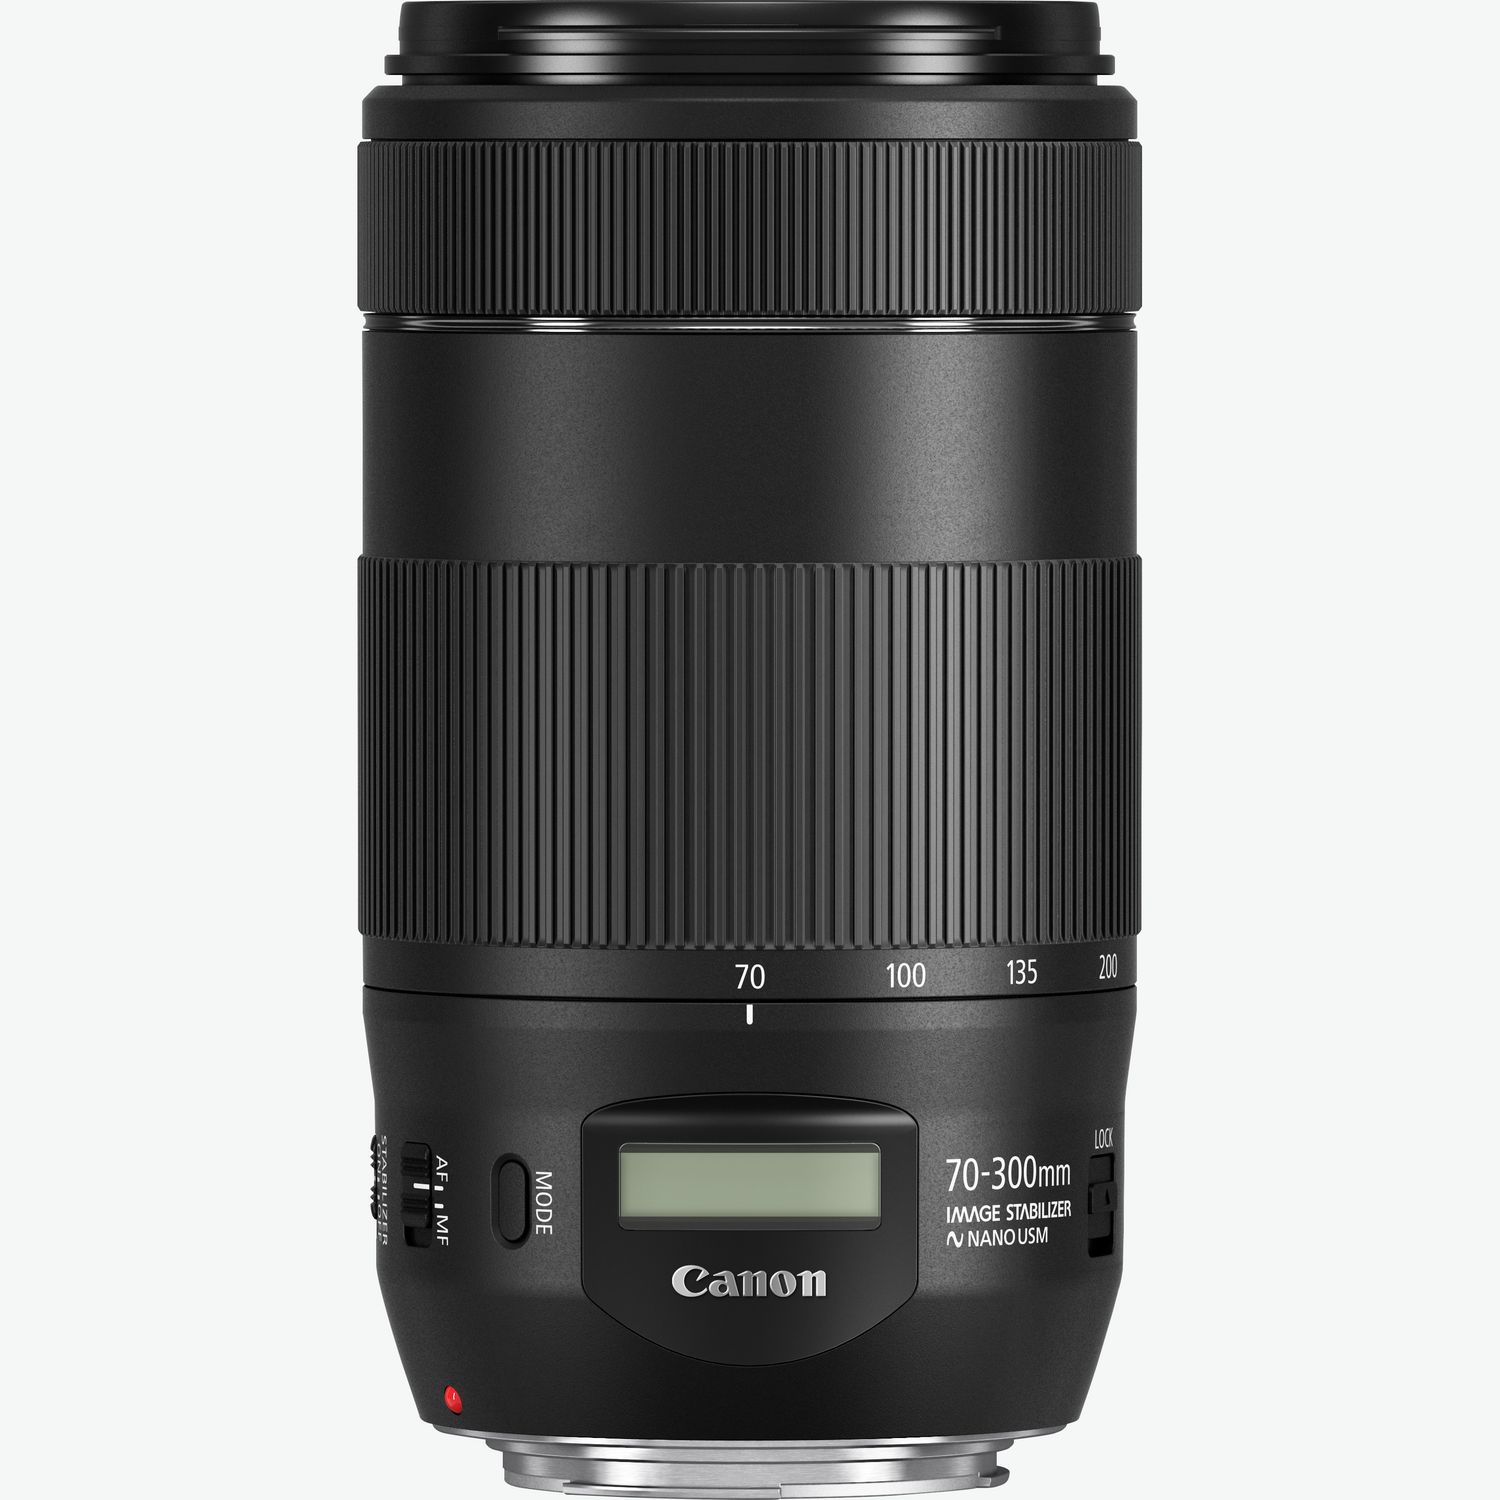 Compra Objetivo Canon EF 70-300 mm f/4-5.6 IS II USM — Tienda Canon Espana